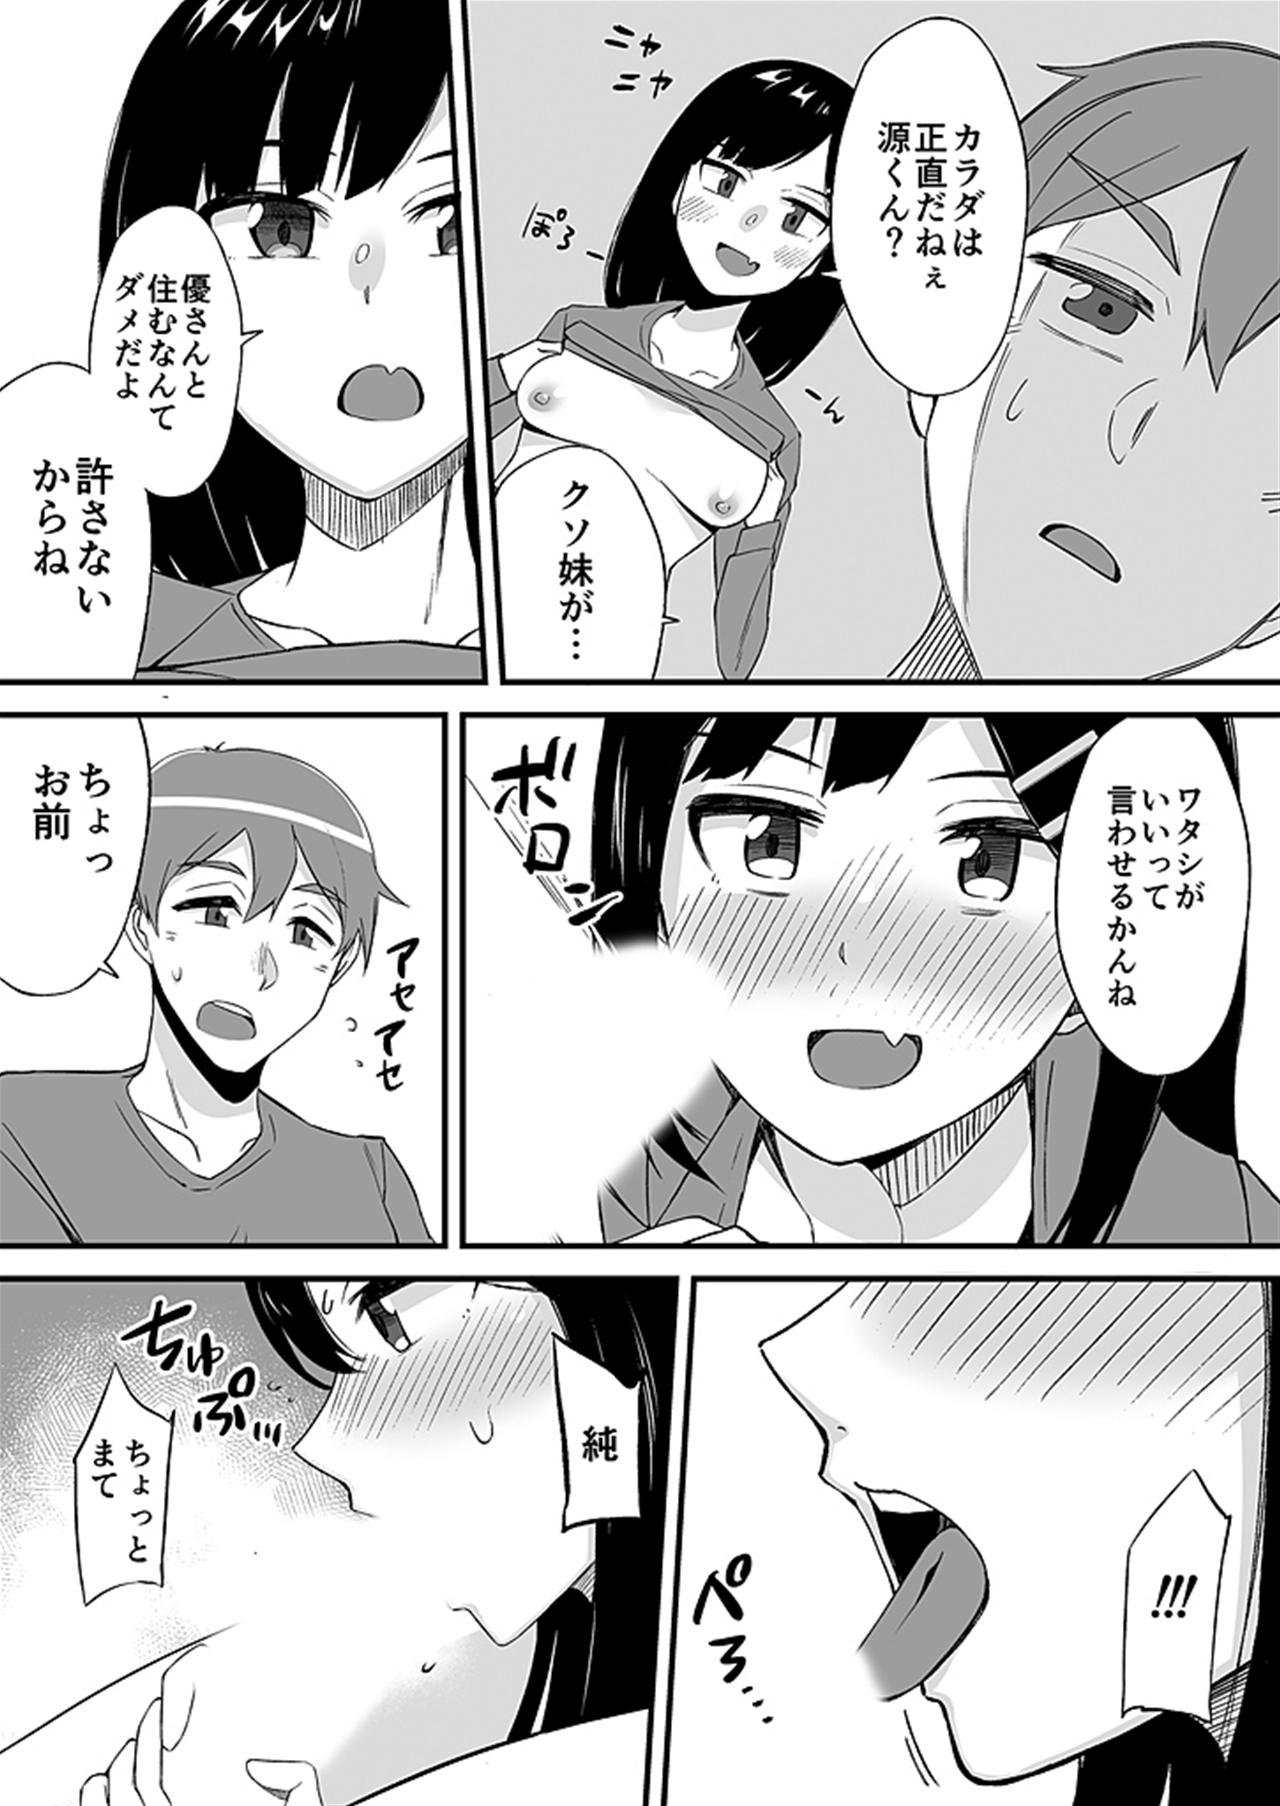 Oral Sex "Imouto no Karada no Kanojo" to "Kanojo no Karada no Imouto", Docchi no Naka ga Kimochi Ii? 2 - Original Tiny - Page 11